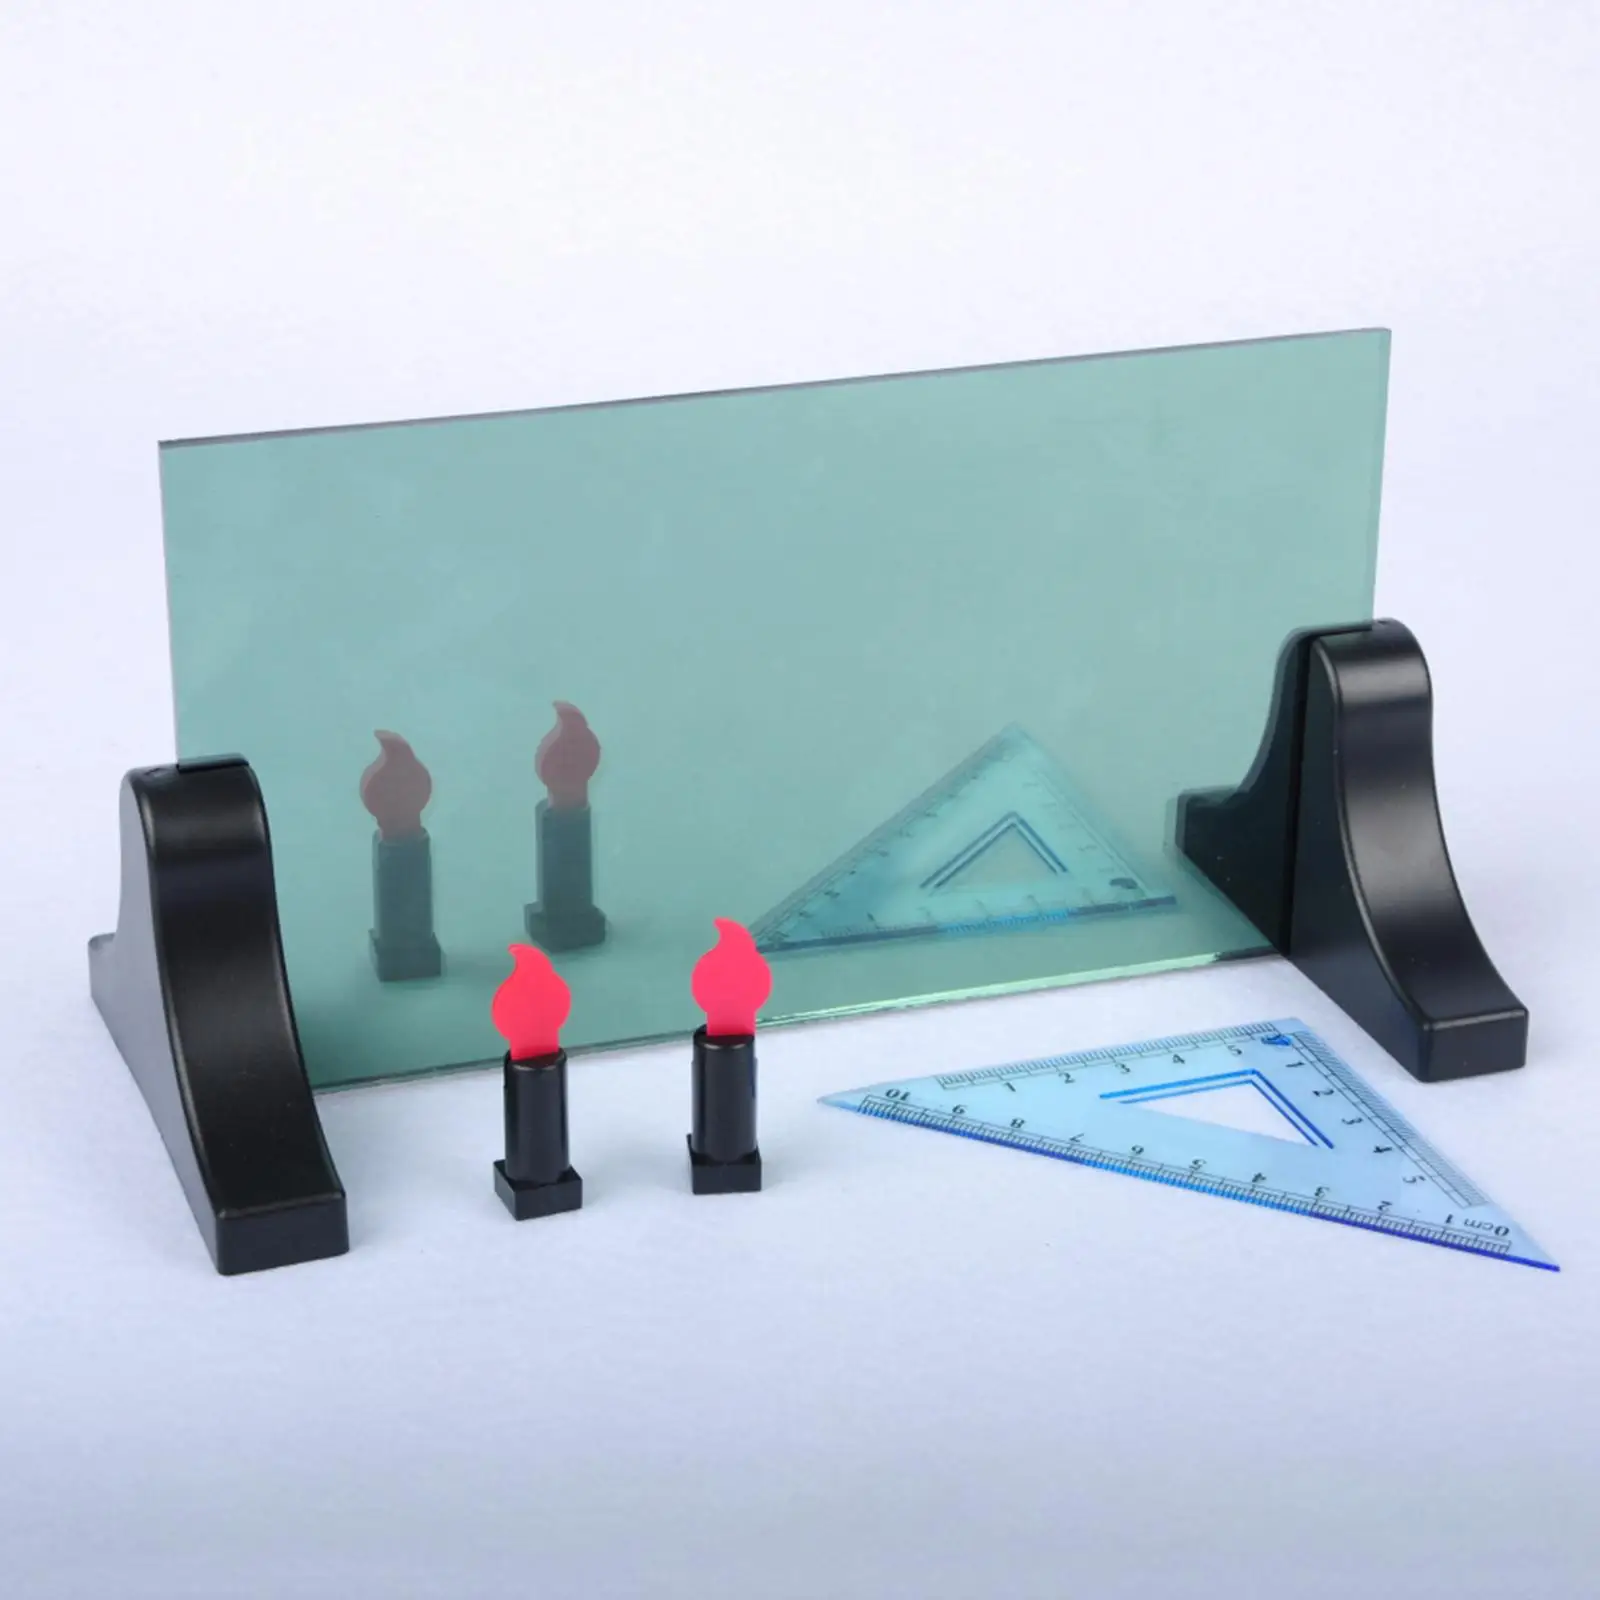 Düzlem Ayna Görüntüleme Cihazı eğitici oyuncak Düzlem Ayna Görüntüleme Gösterici Fiziksel Optik Deney Kız Erkek Çocuklar için